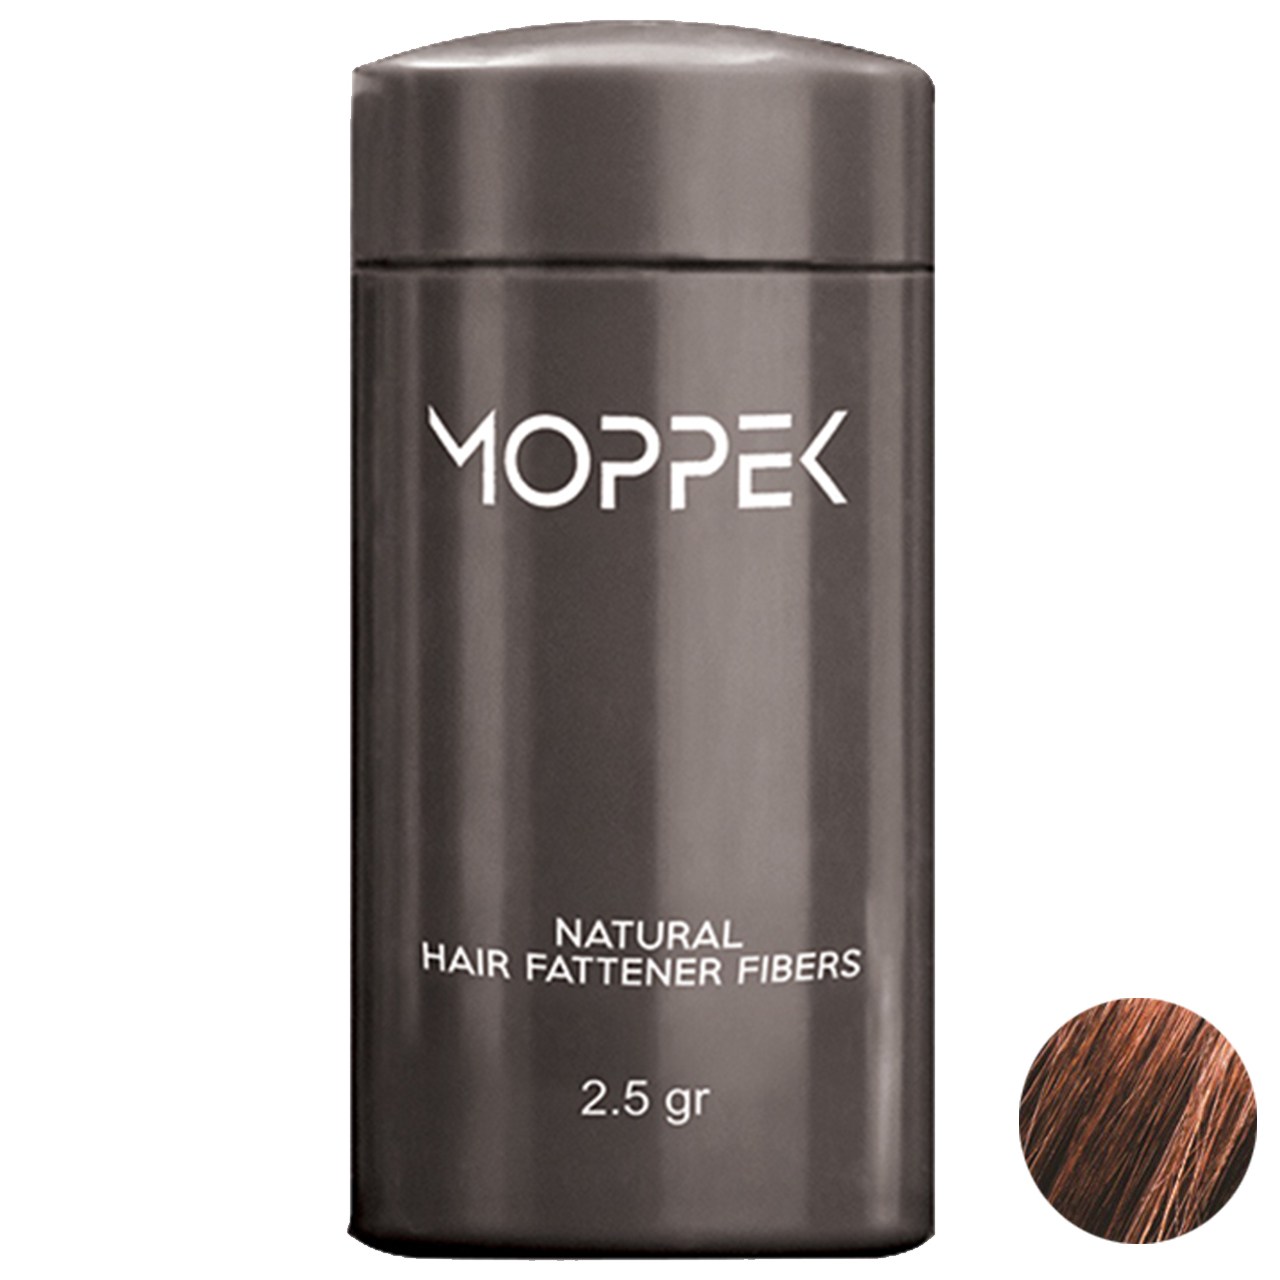 پودر پرپشت کننده موی موپک مدل Mocha مقدار 2.5 گرم